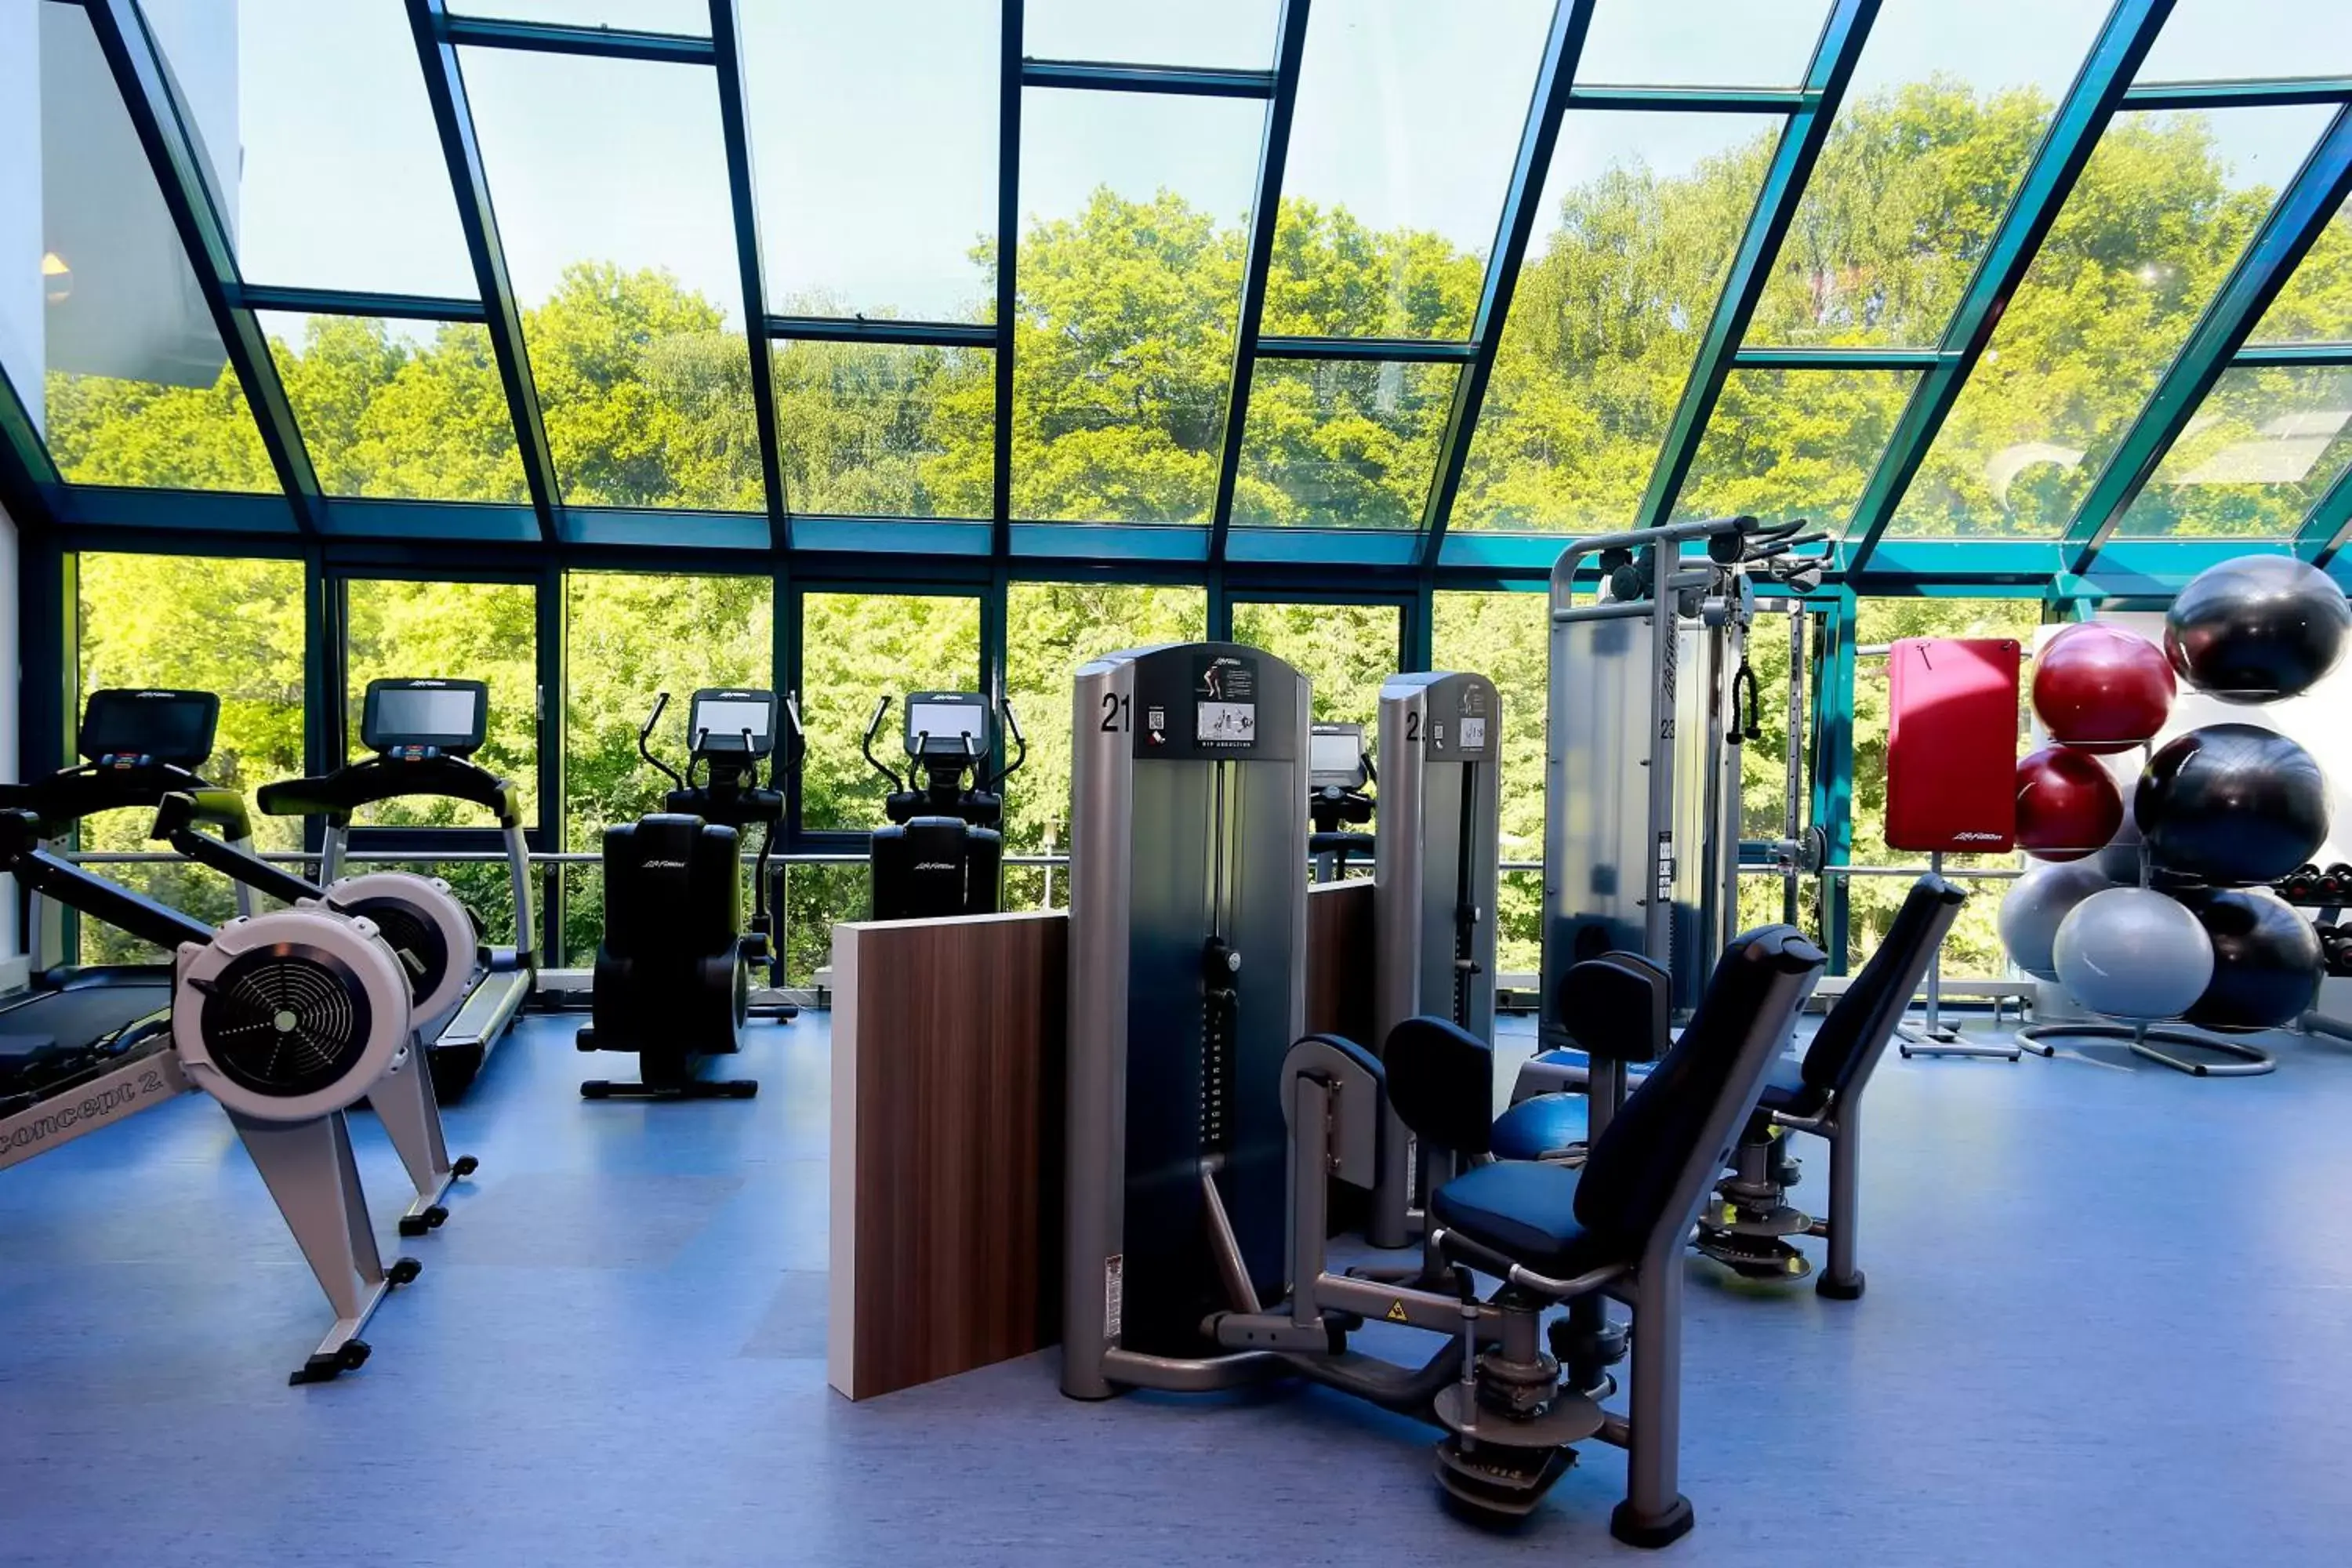 Fitness centre/facilities, Fitness Center/Facilities in Sanadome Hotel & Spa Nijmegen